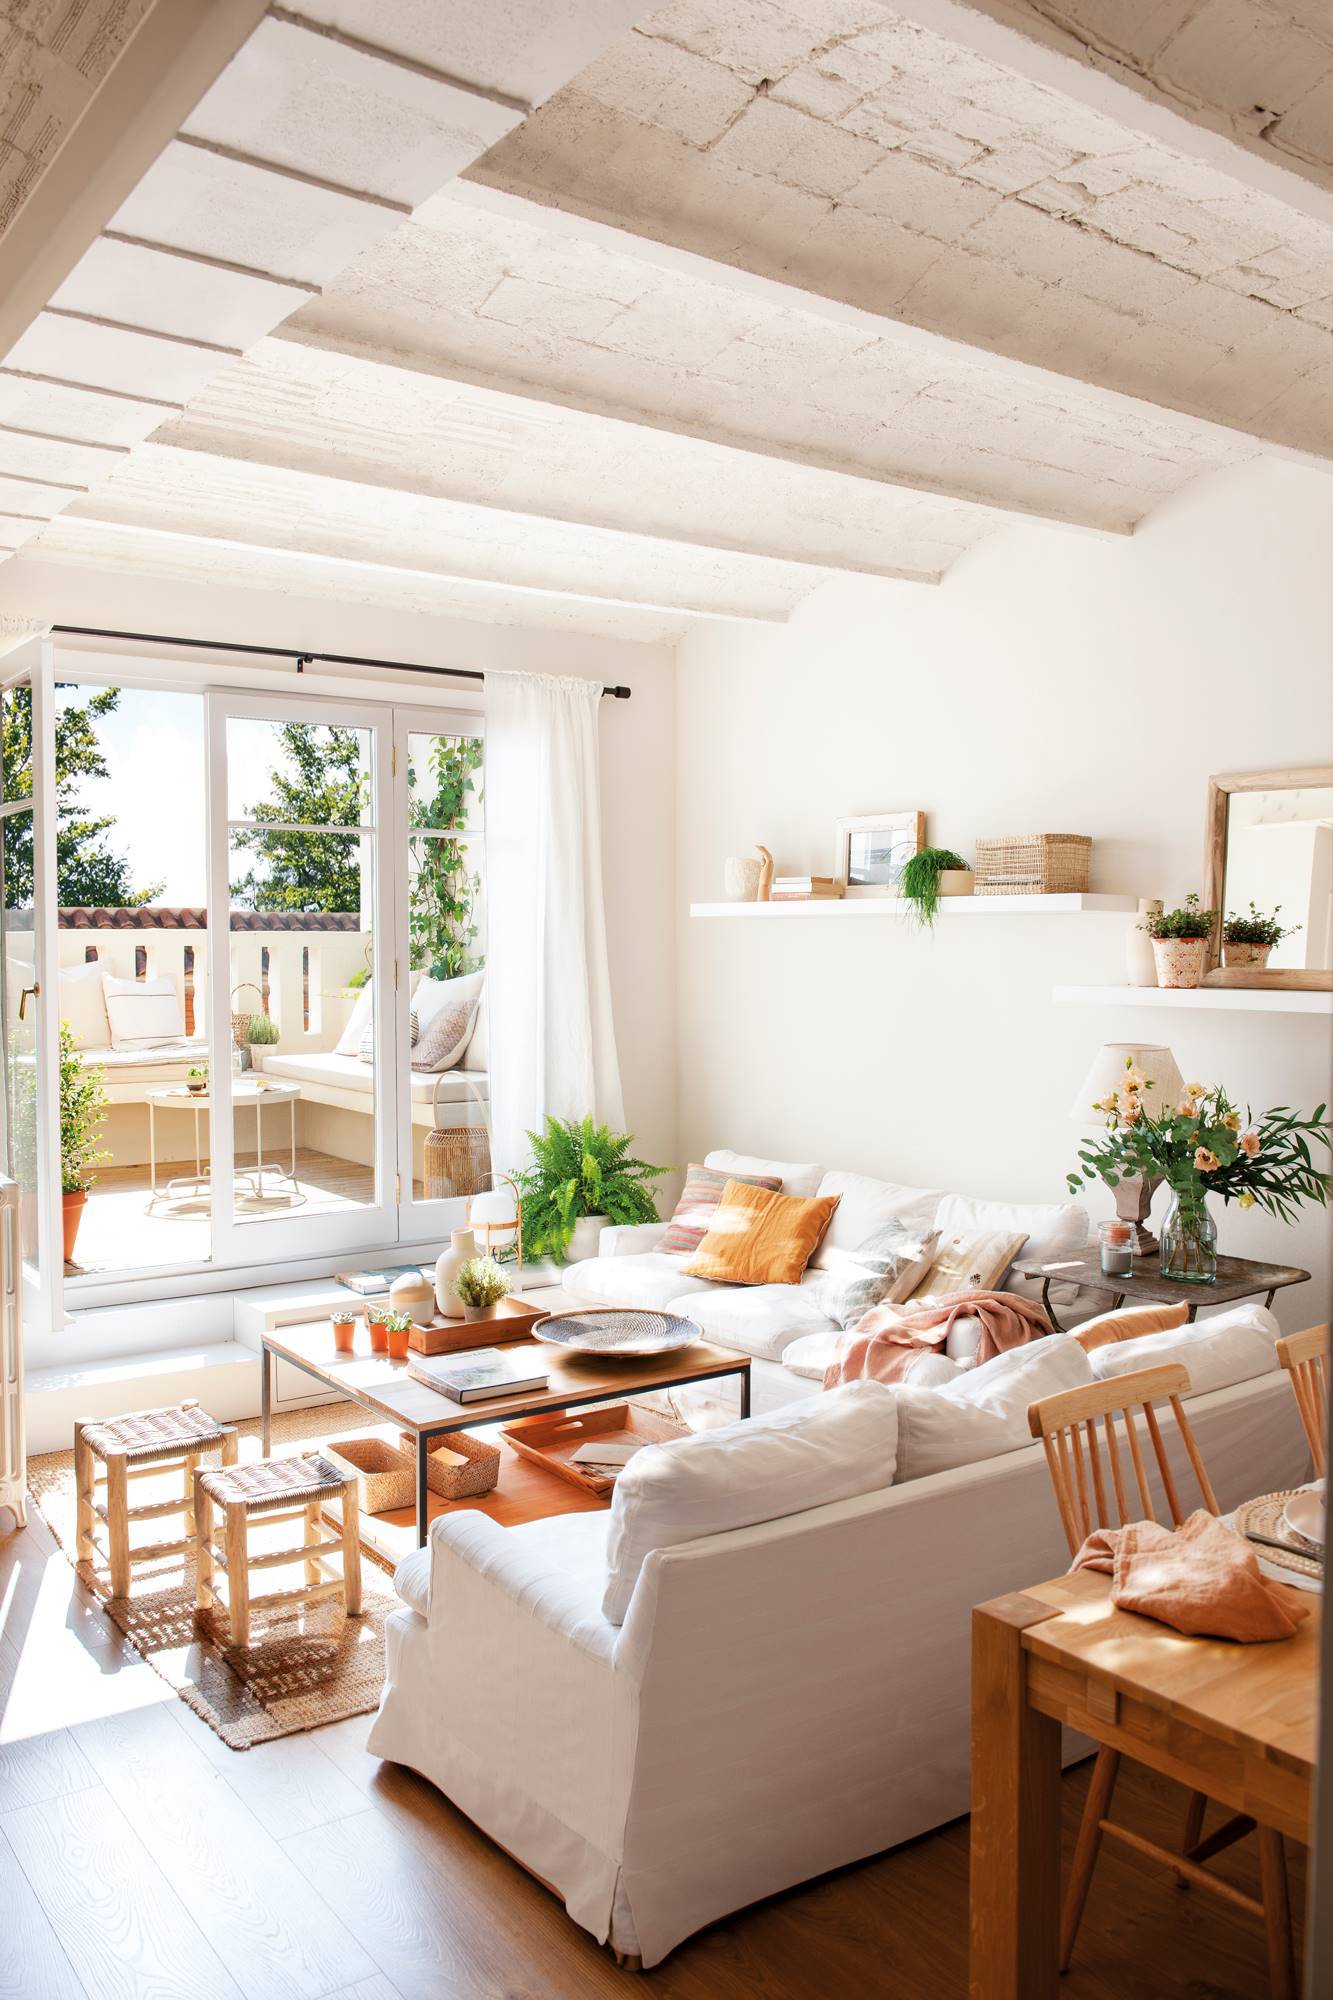 Salón blanco pequeño con gran ventanal a la terraza y techo de bóveda catalana 00513332 